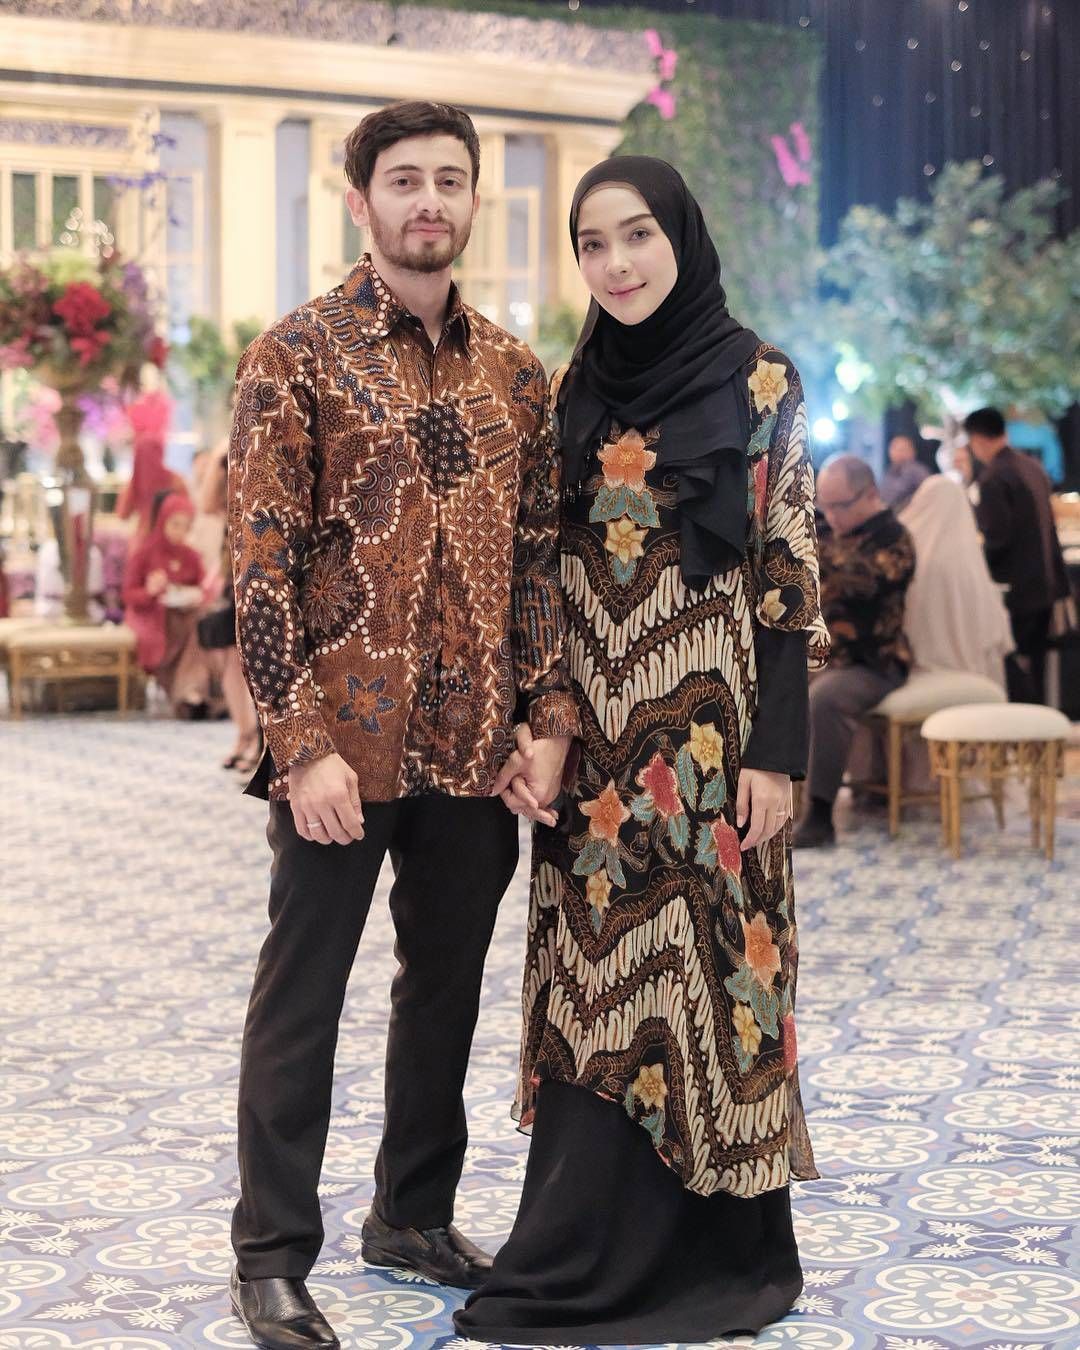 8 Model Gamis Batik Pesta yang Modern dan Elegan